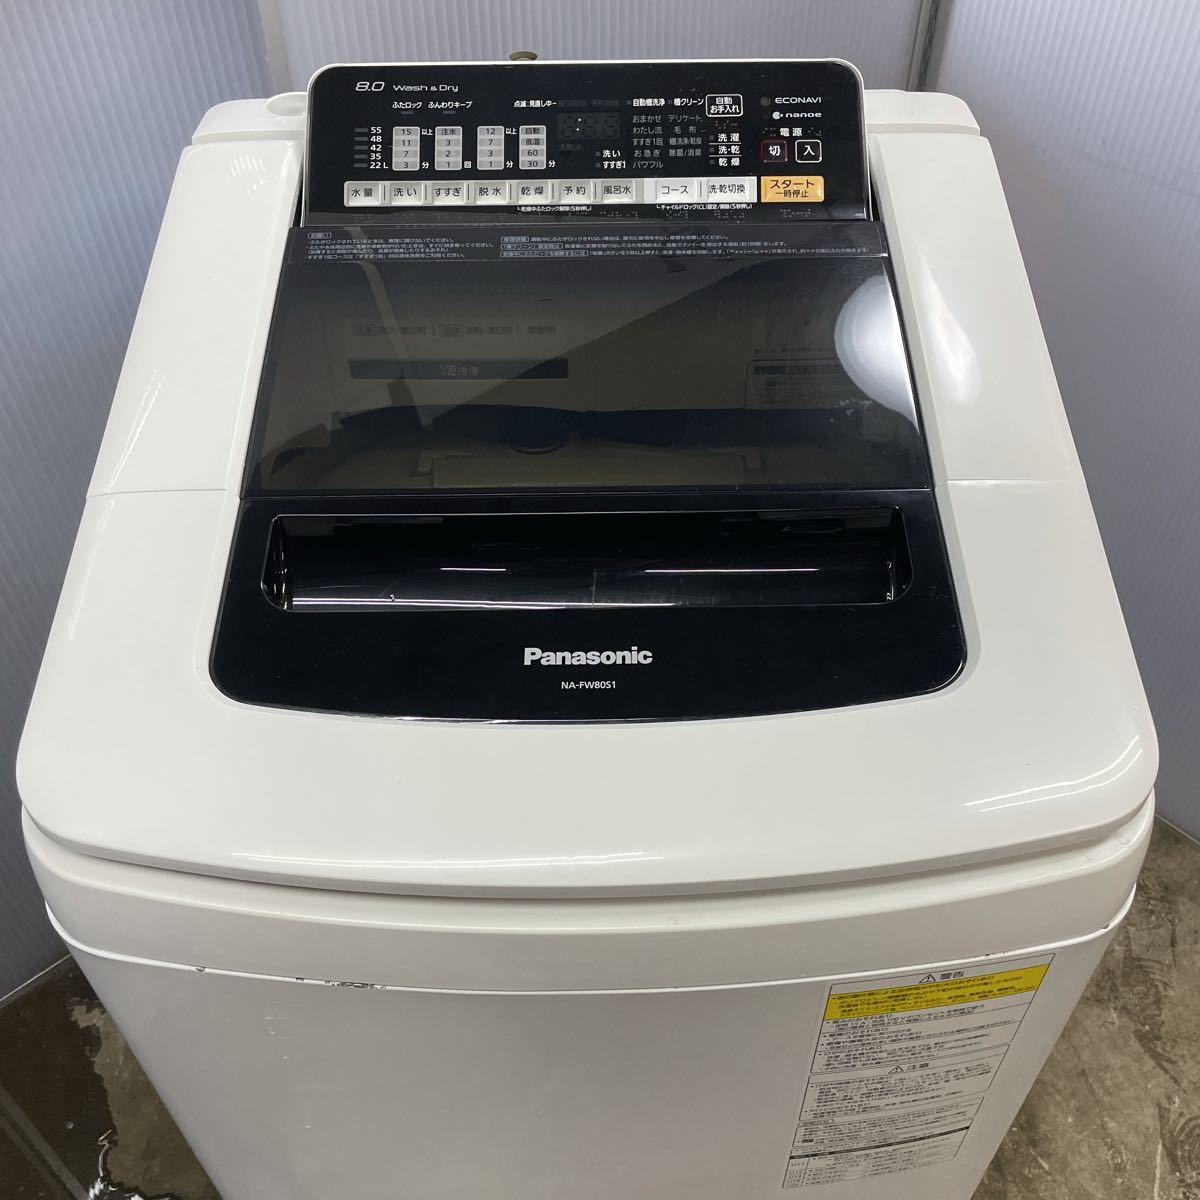 パナソニック Panasonic NA-FW80S1 洗濯乾燥機 洗濯機 エコナビ 全自動洗濯機